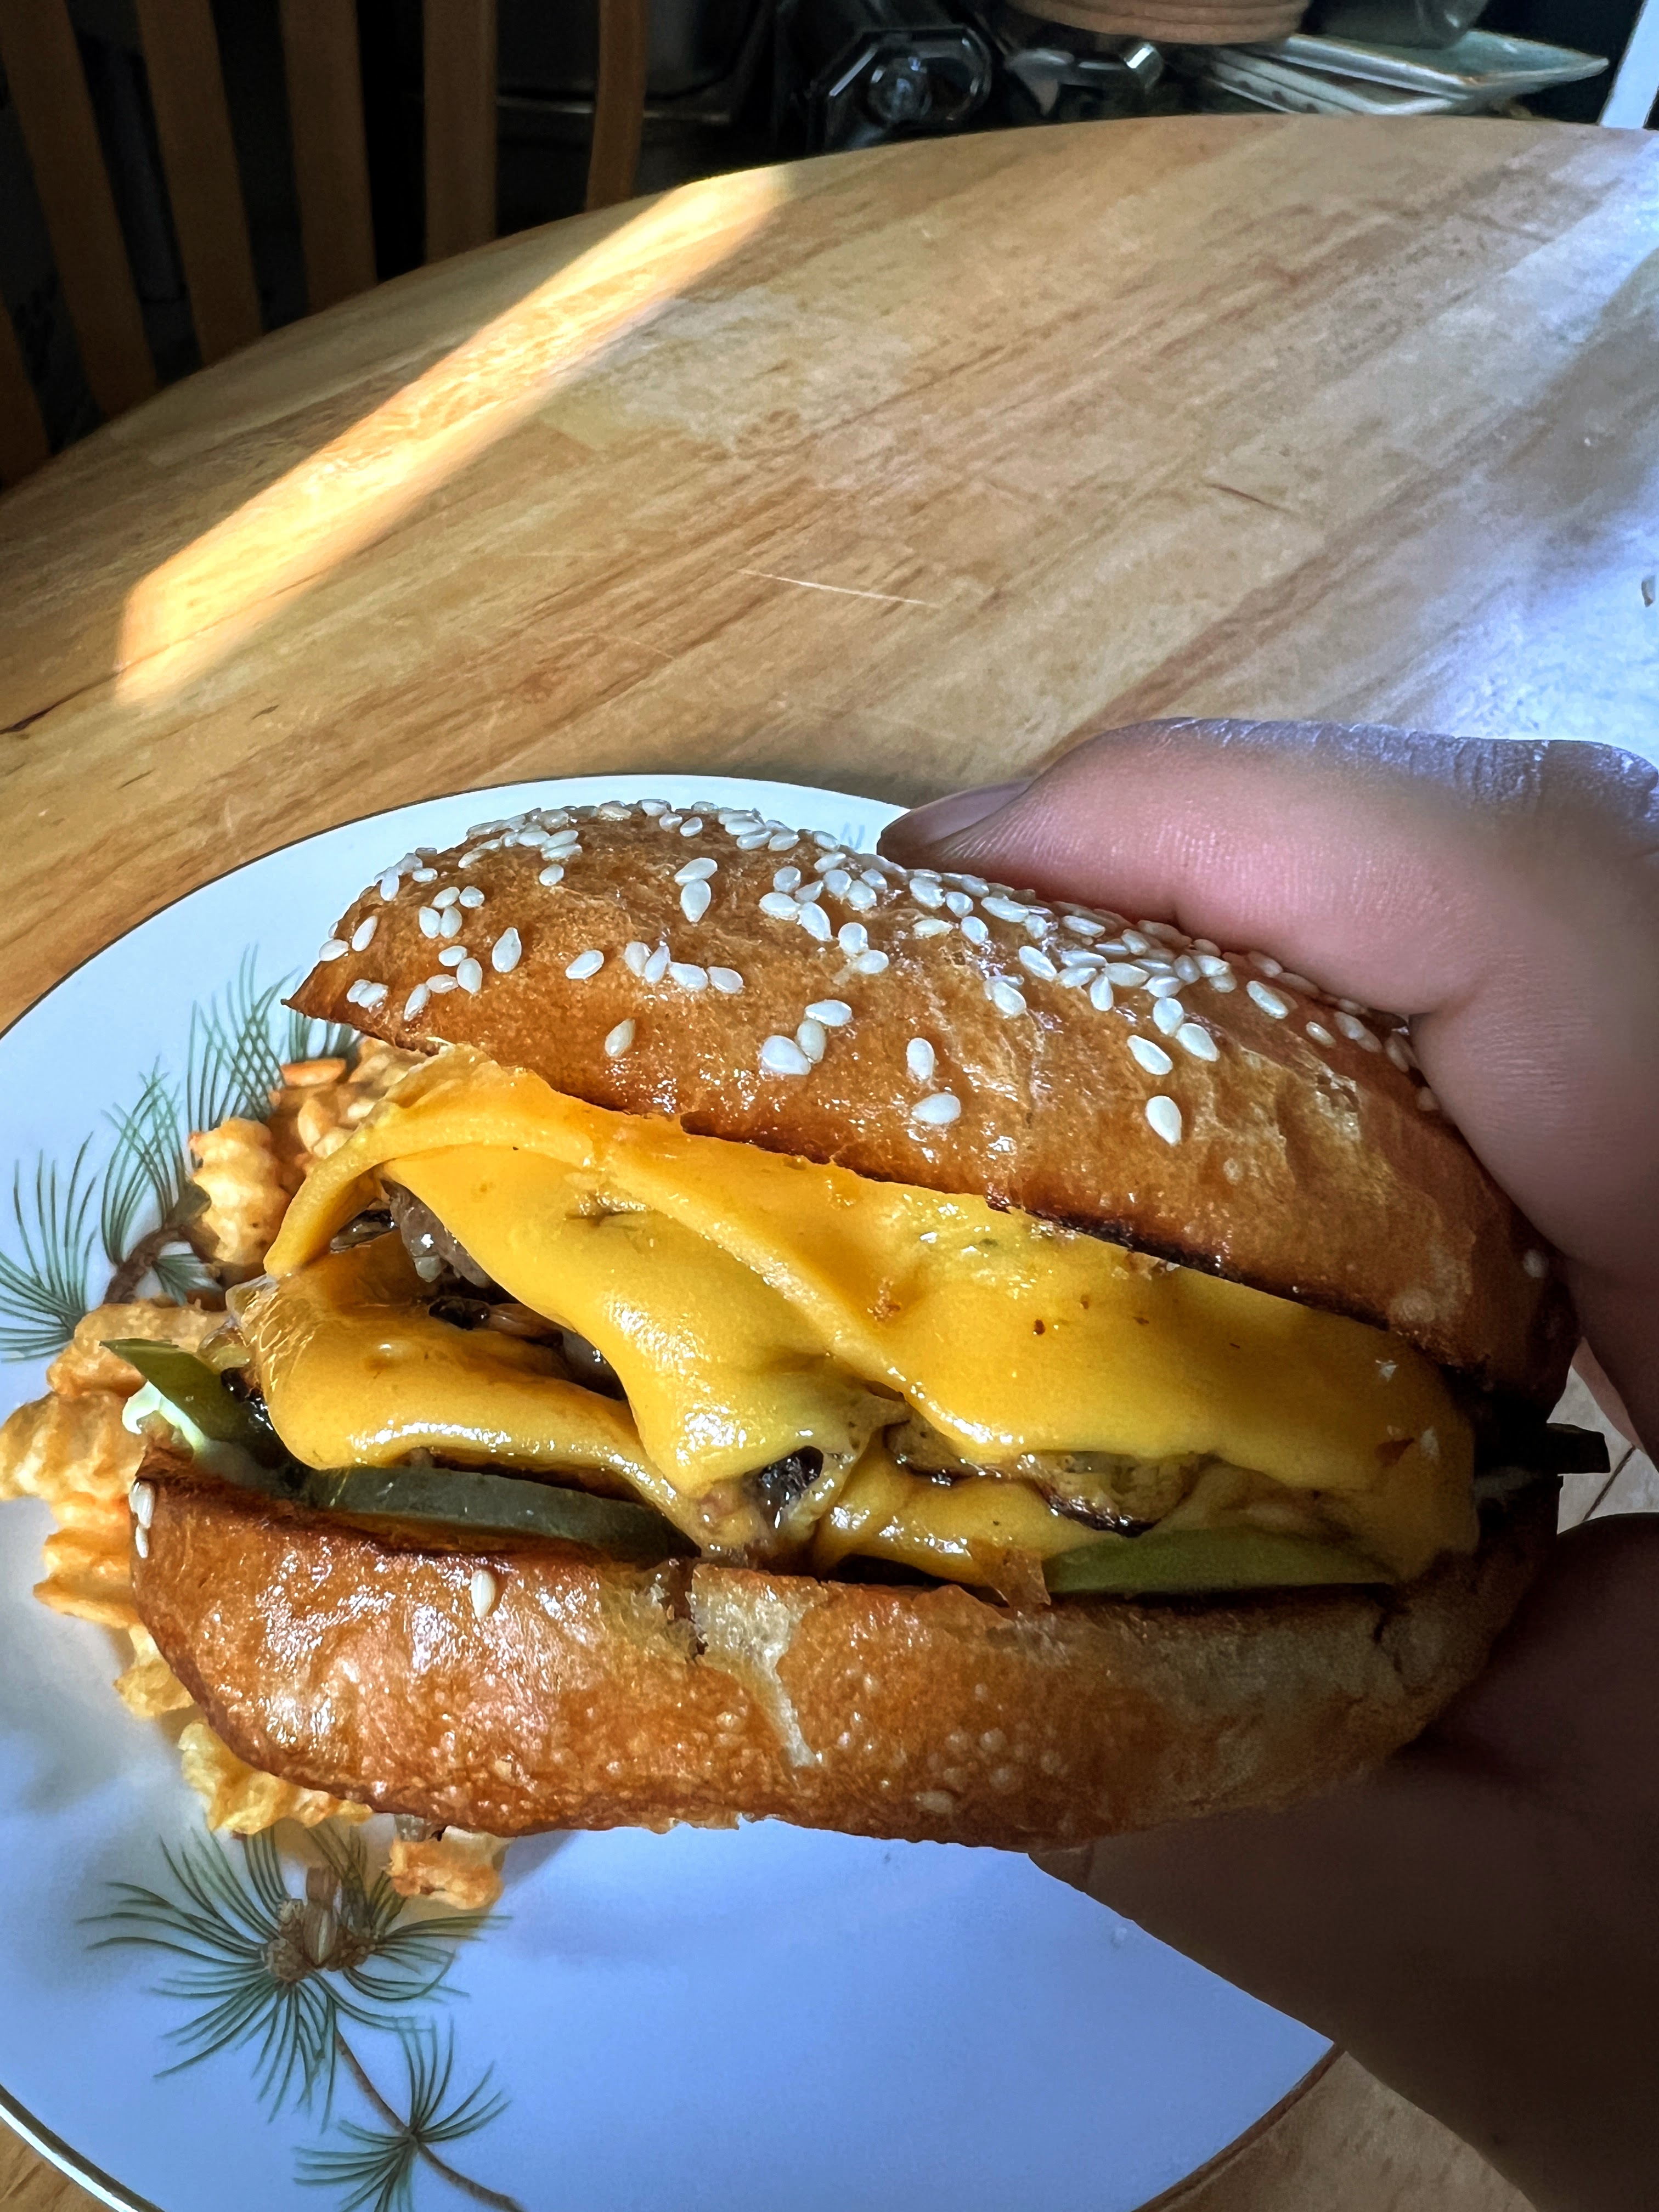 Cheeseburger from The Menu